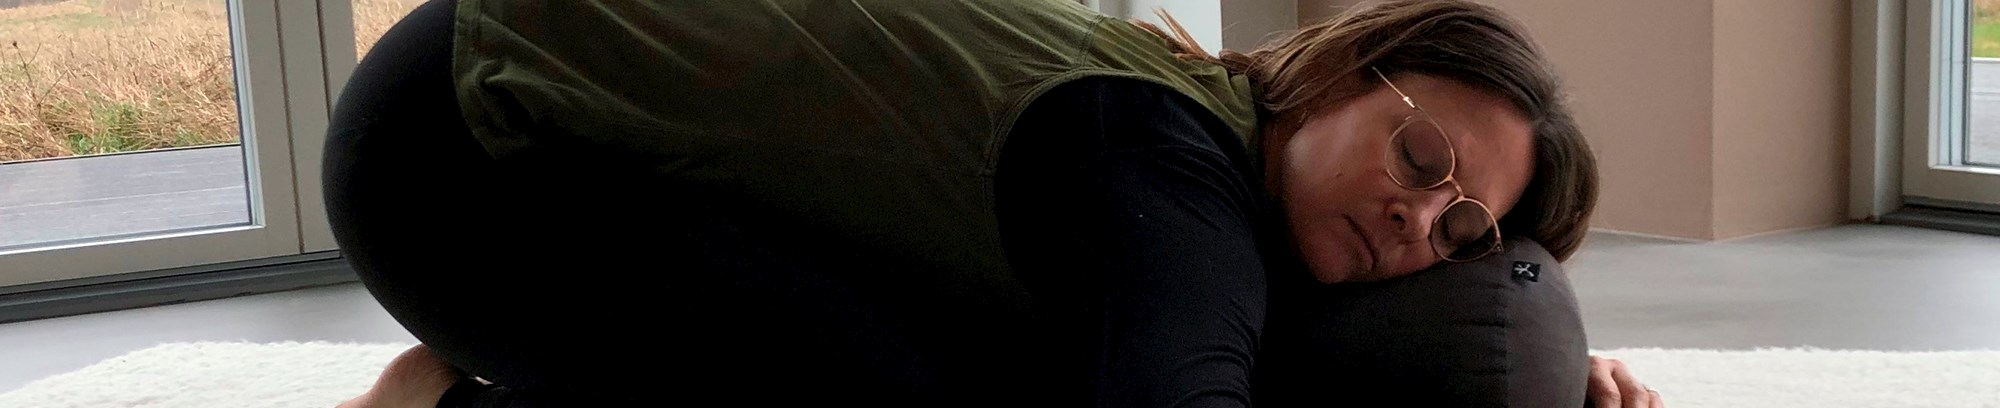 Yin yoga underviser, Malene Lillebæk Clausen, der laver øvelsen "Barnet" på en yogamåtte med en yogapølle